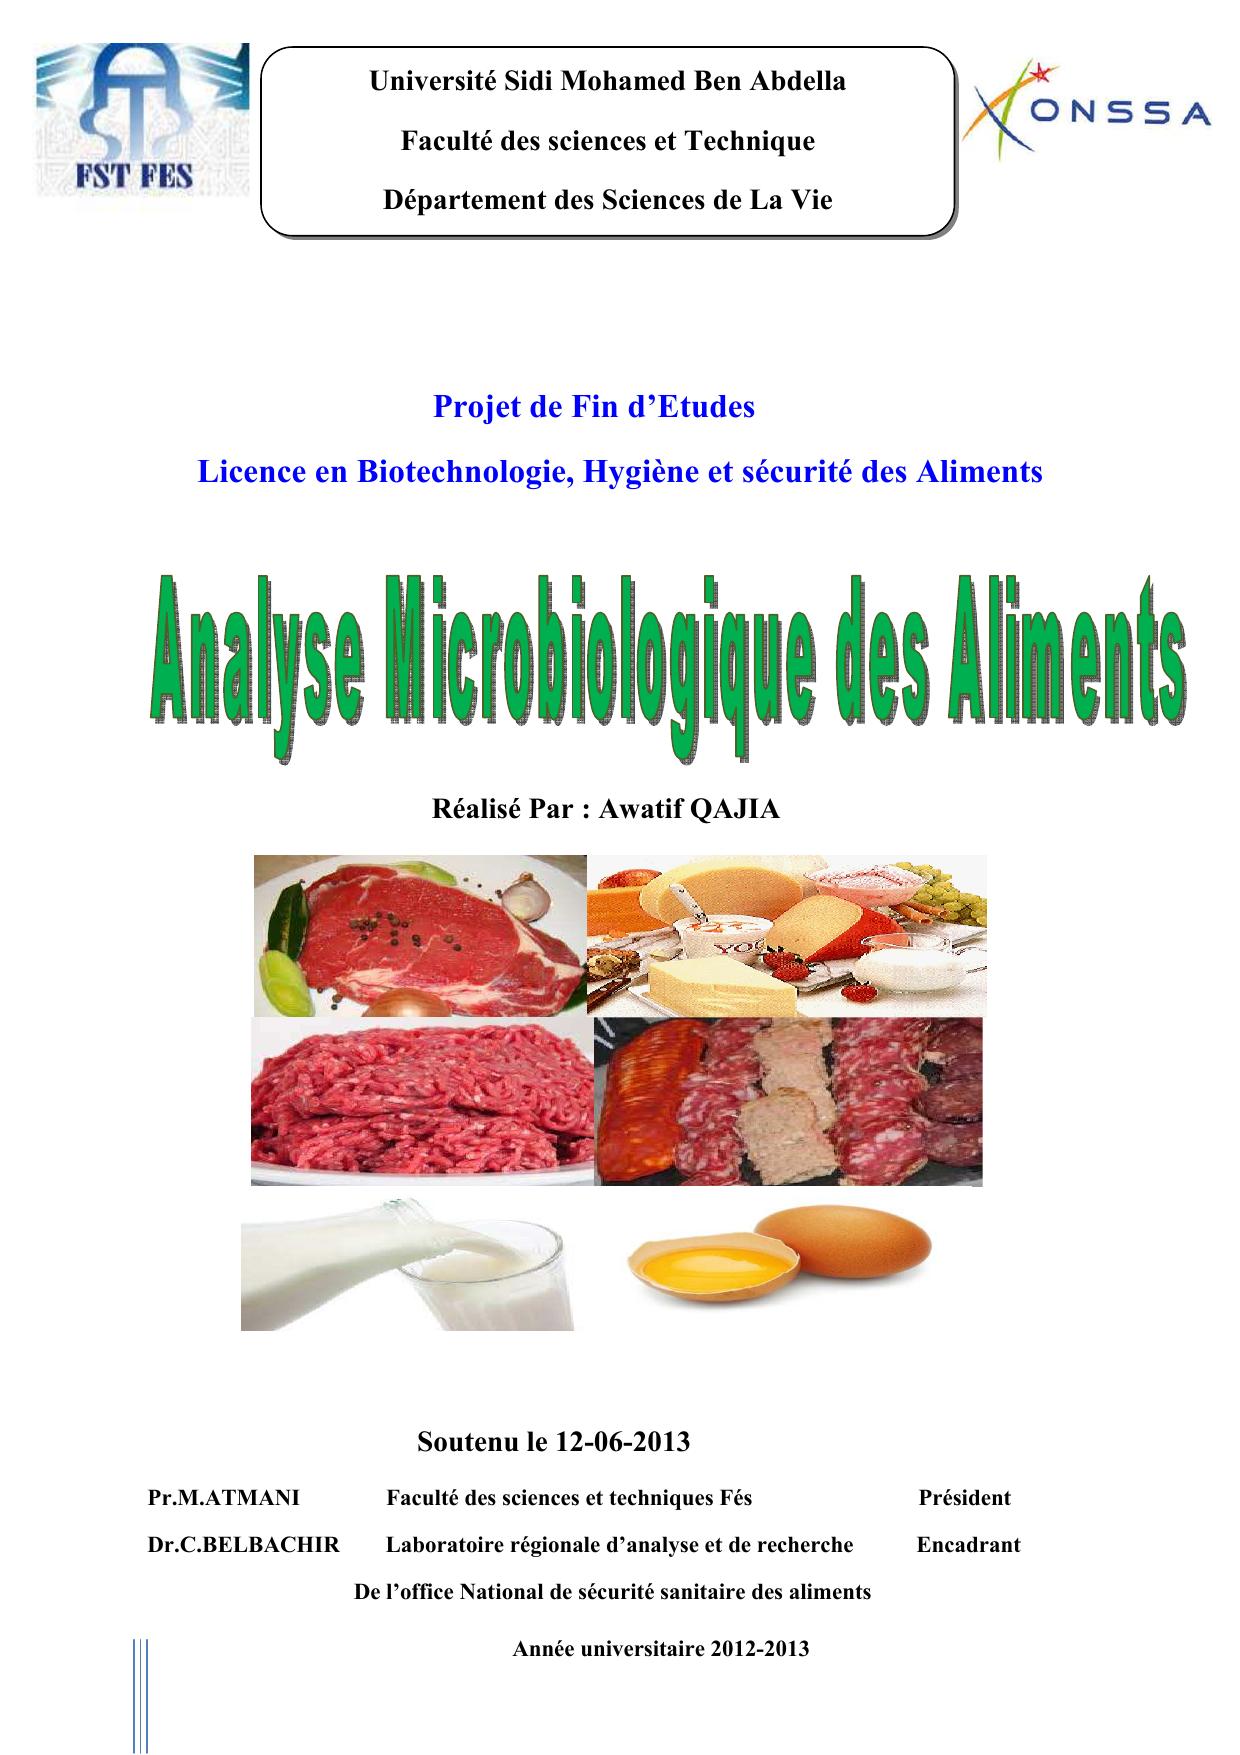 Analyses microbiologique des aliments